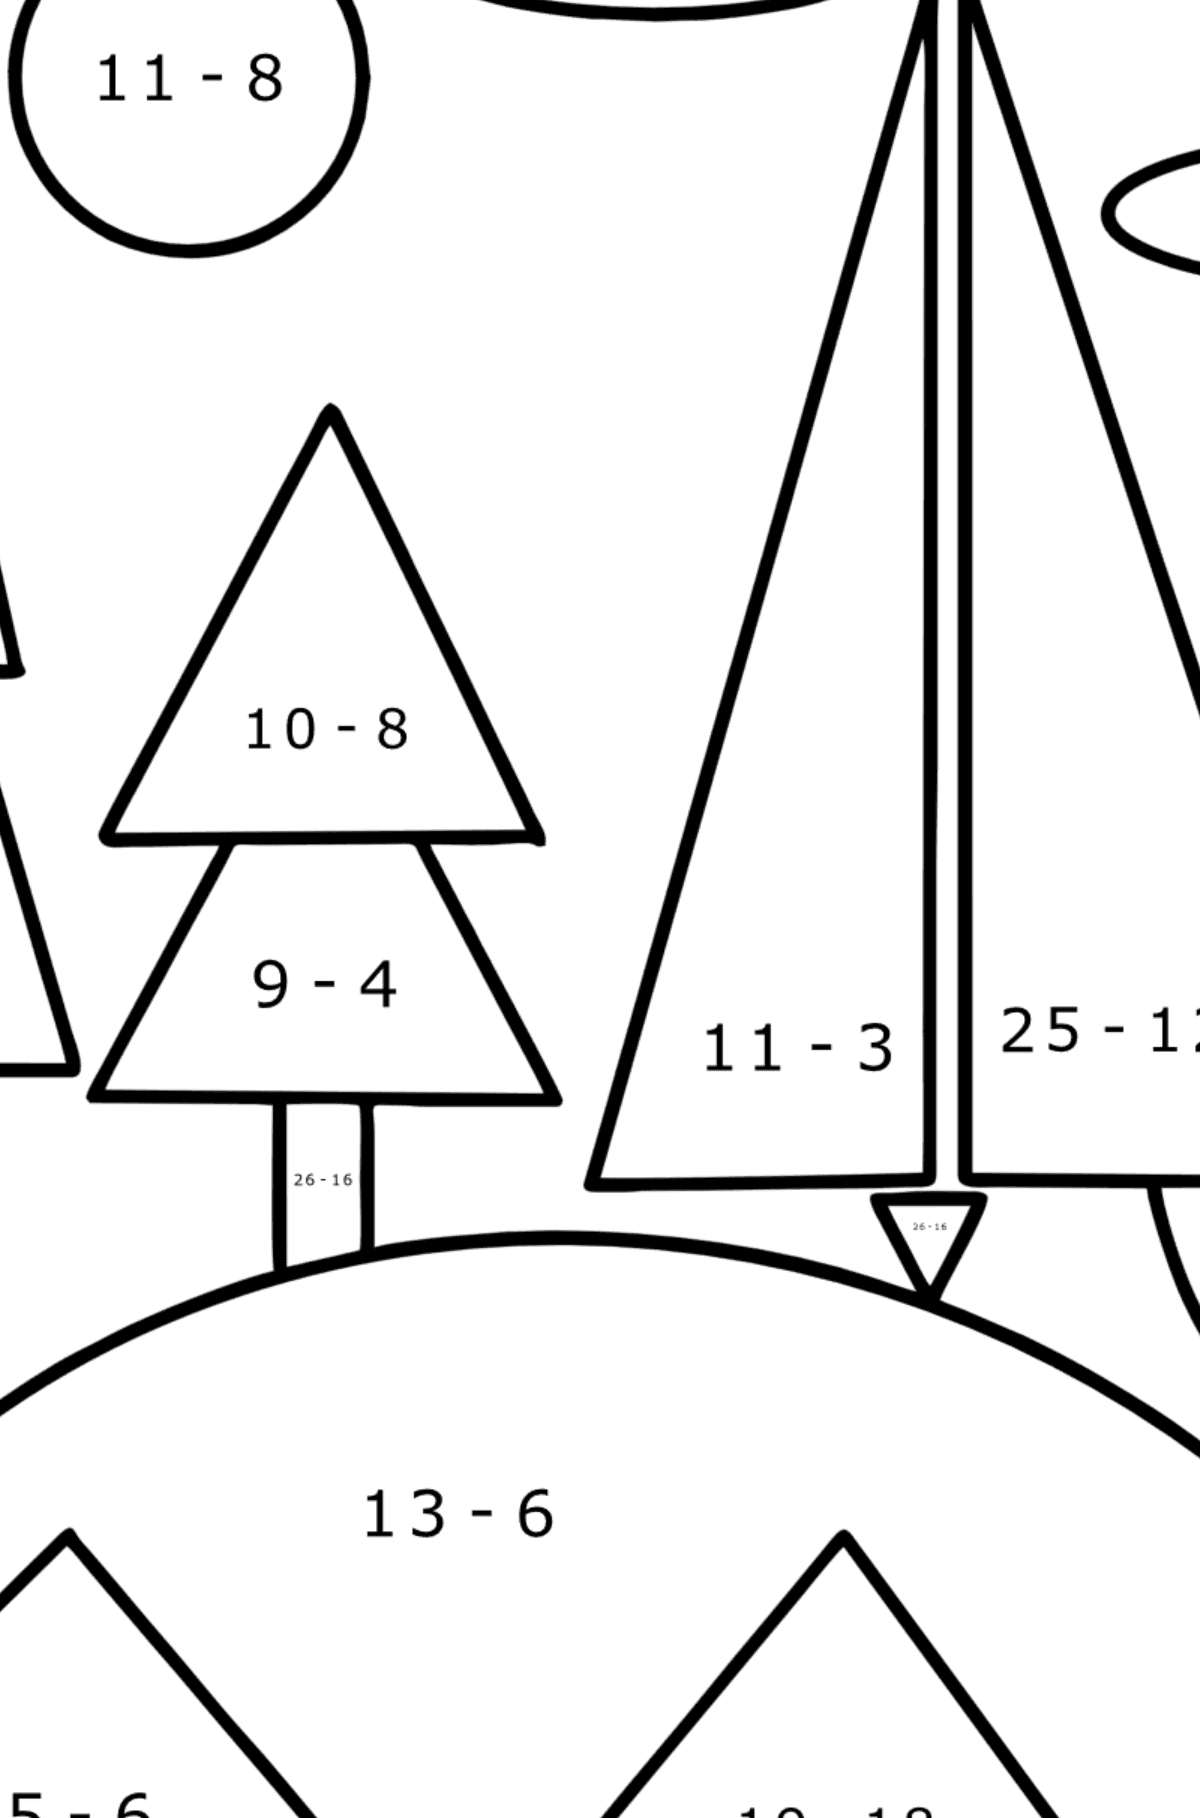 Ausmalbild Wald auf einem Hügel mit geometrischen Formen - Mathe Ausmalbilder - Subtraktion für Kinder